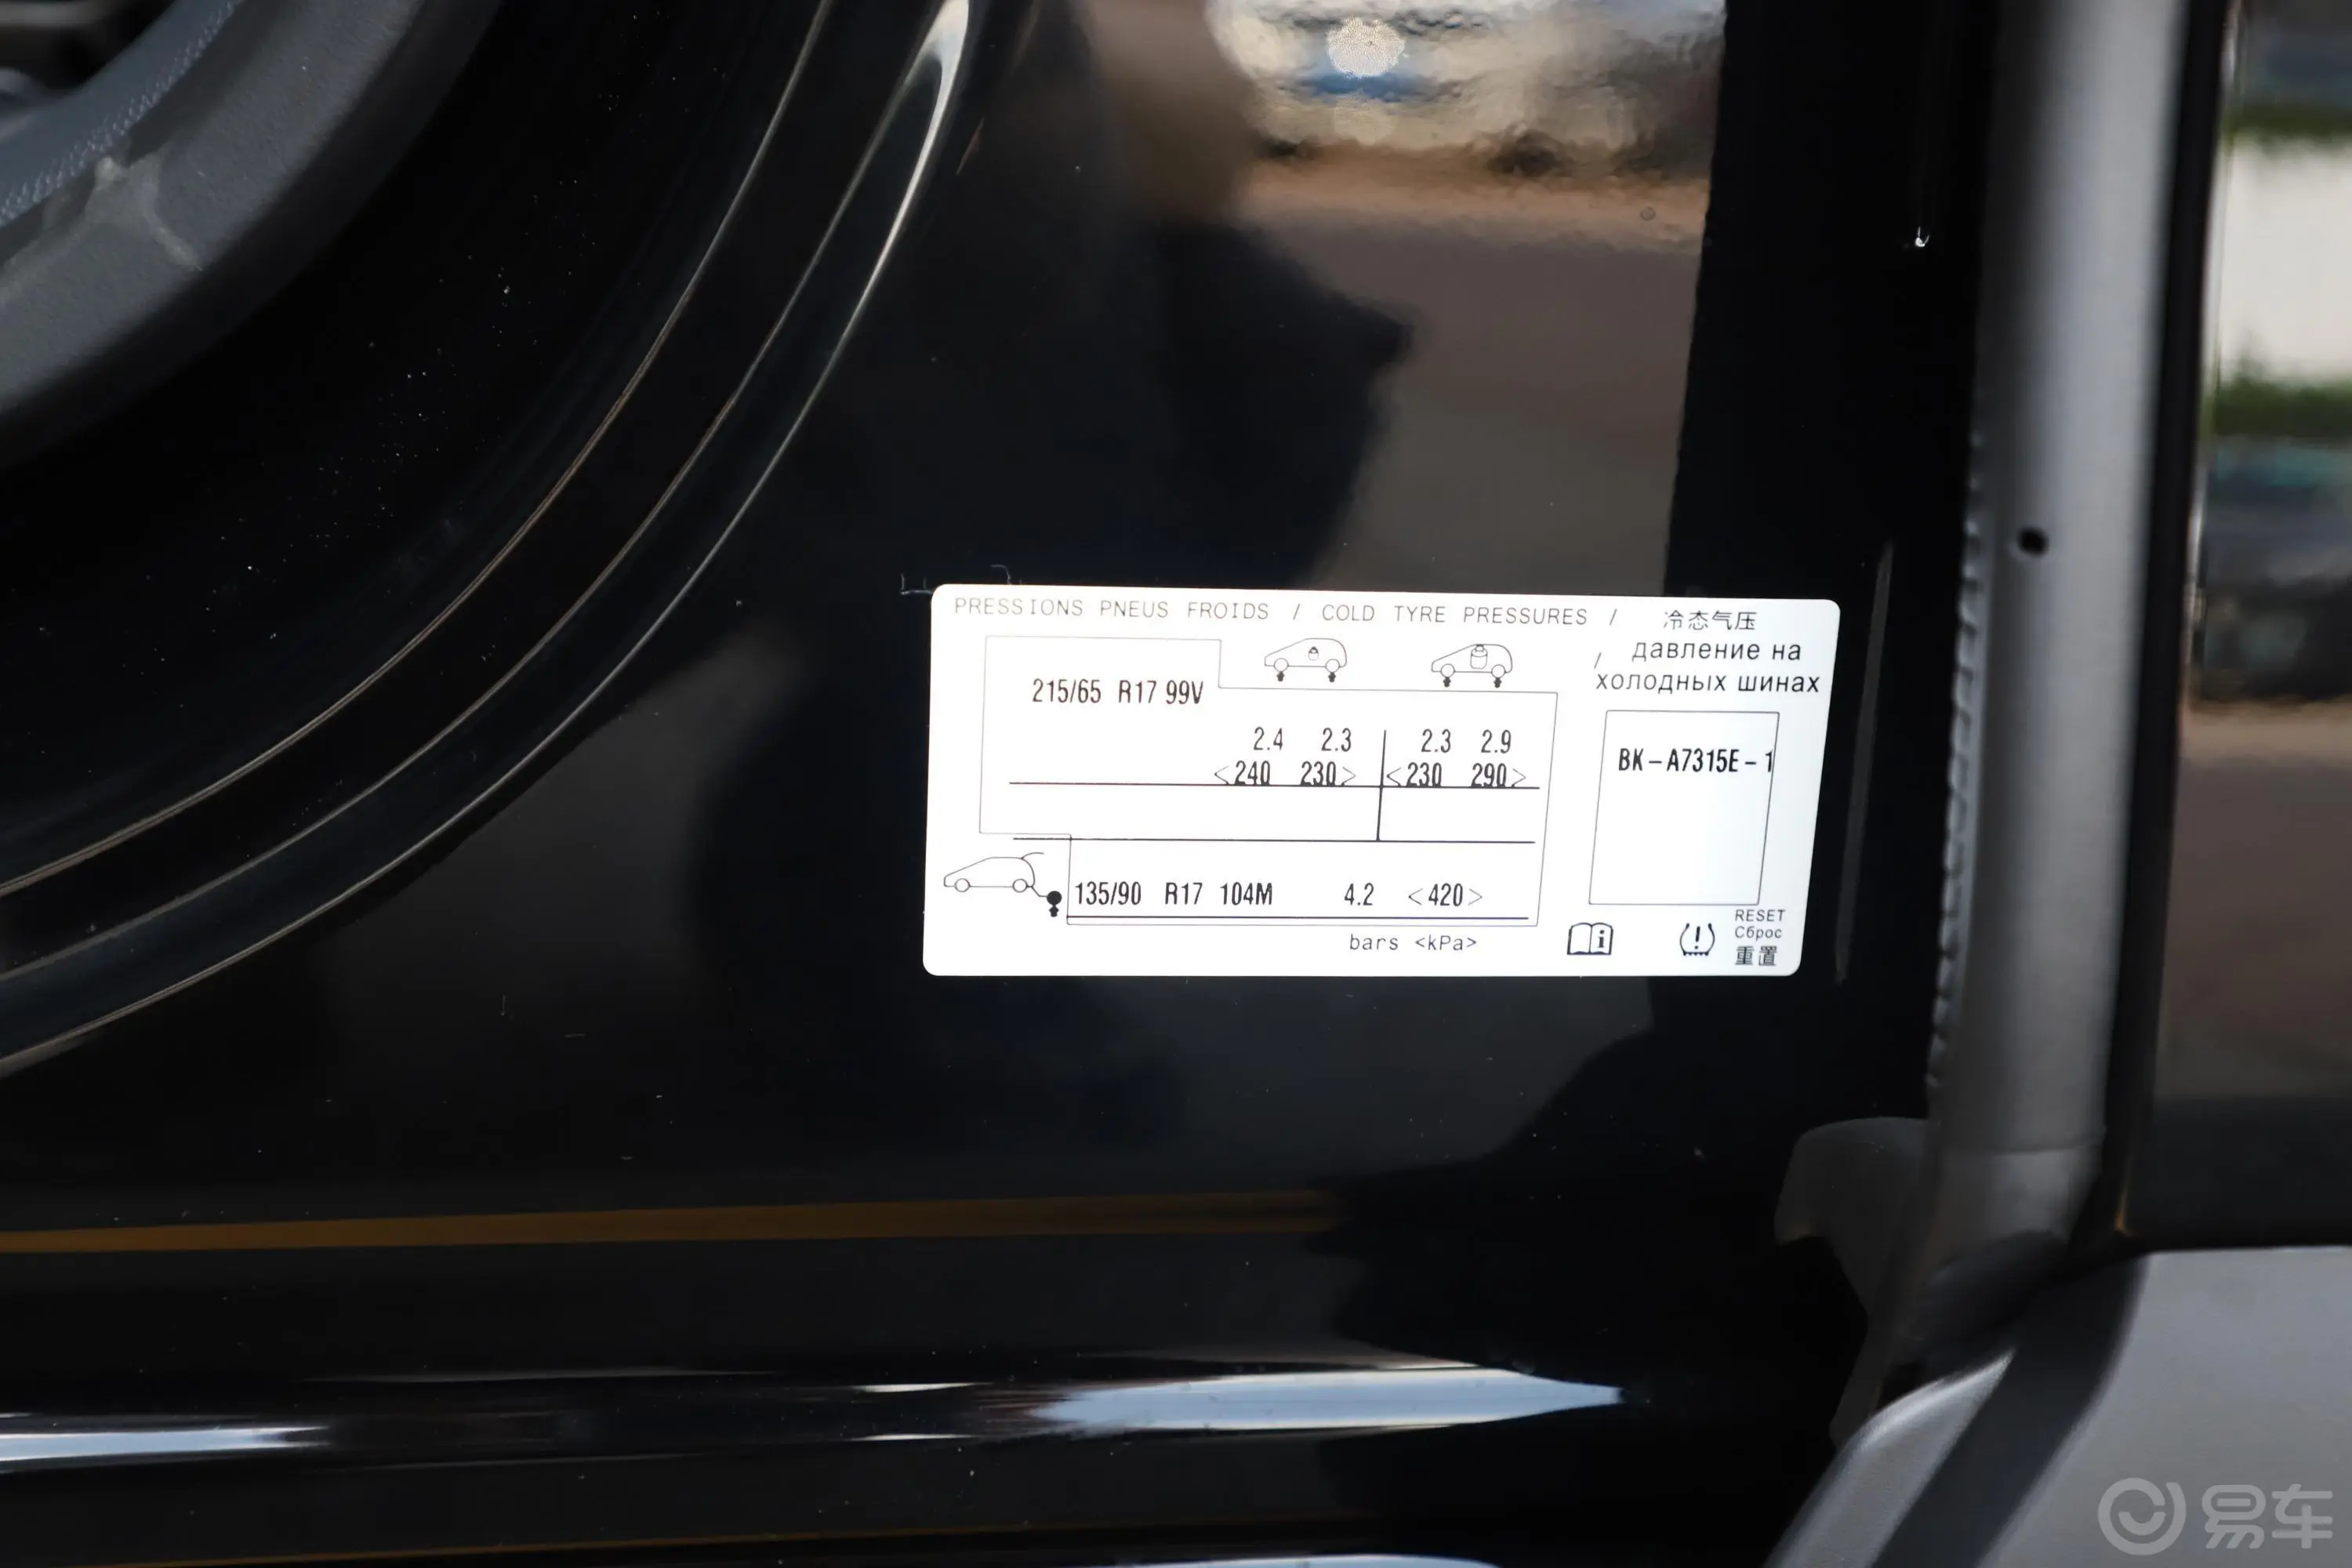 DS 735THP 巴士底广场版胎压信息铭牌